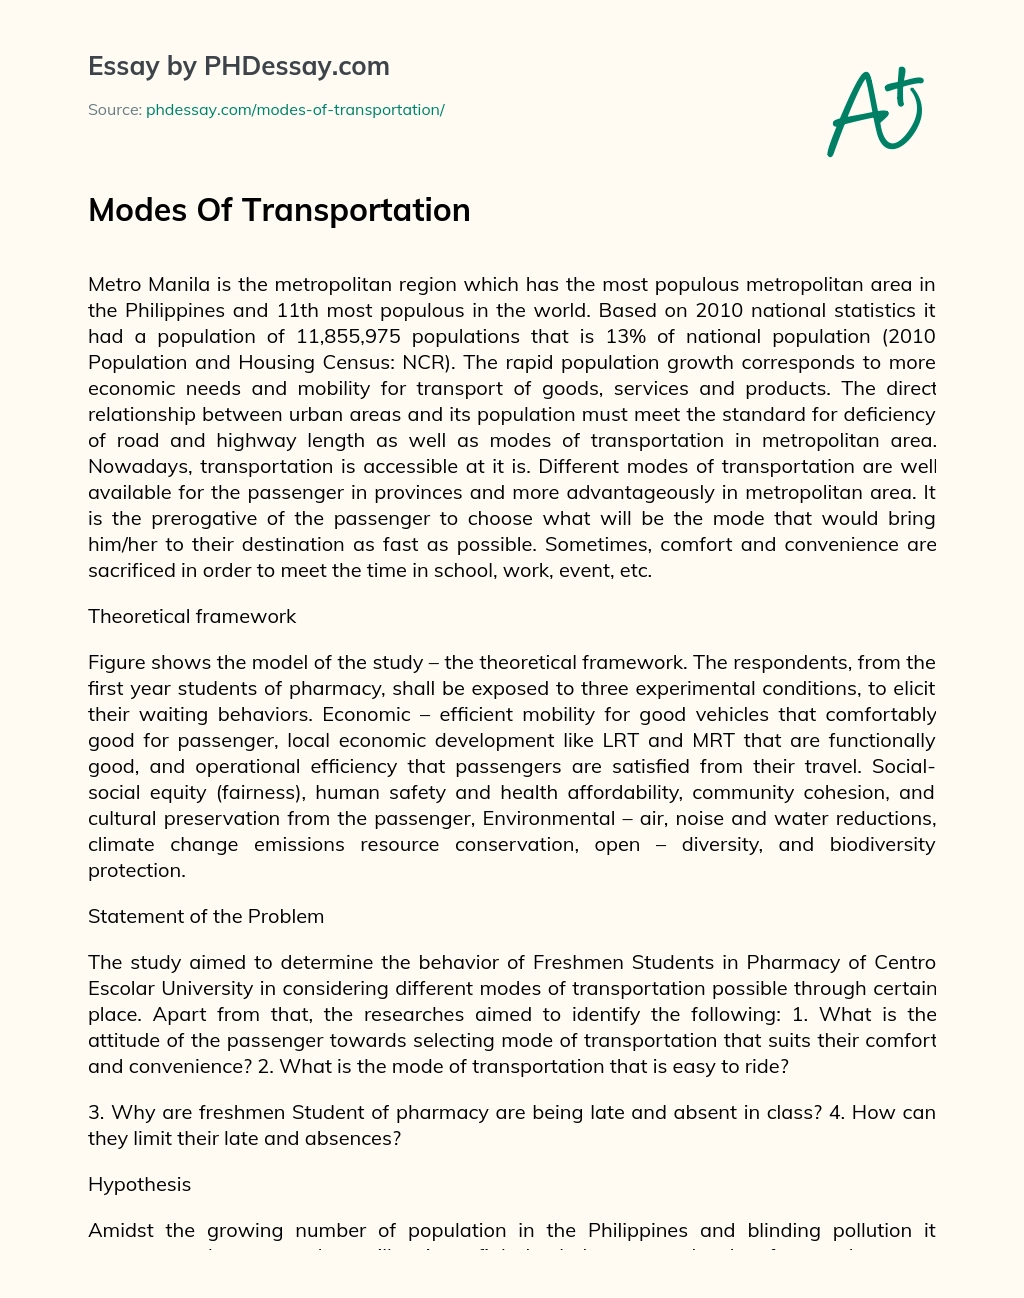 Modes Of Transportation essay